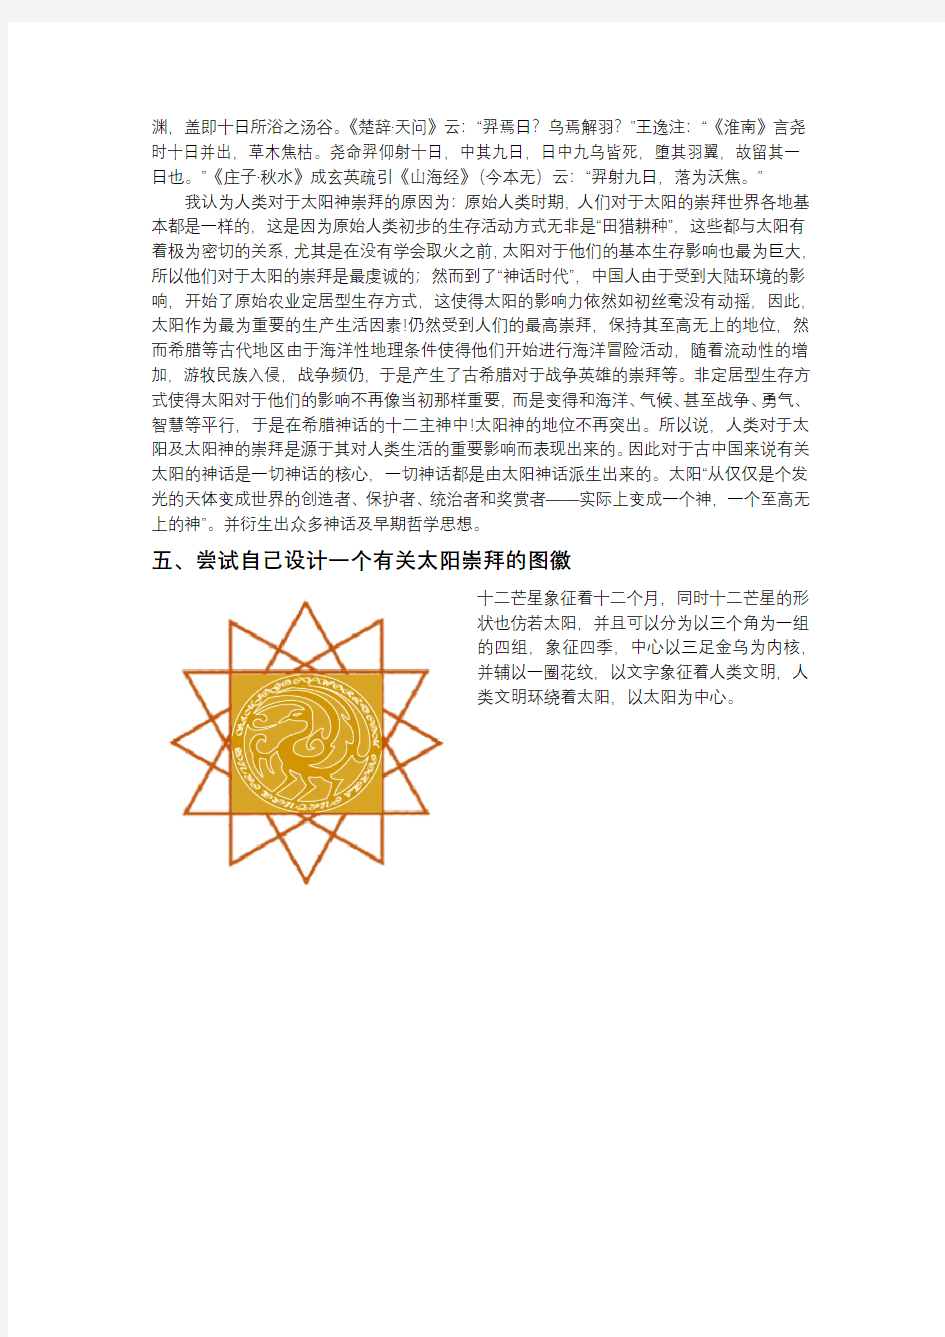 中国文化遗产日图标“太阳神鸟”的内涵